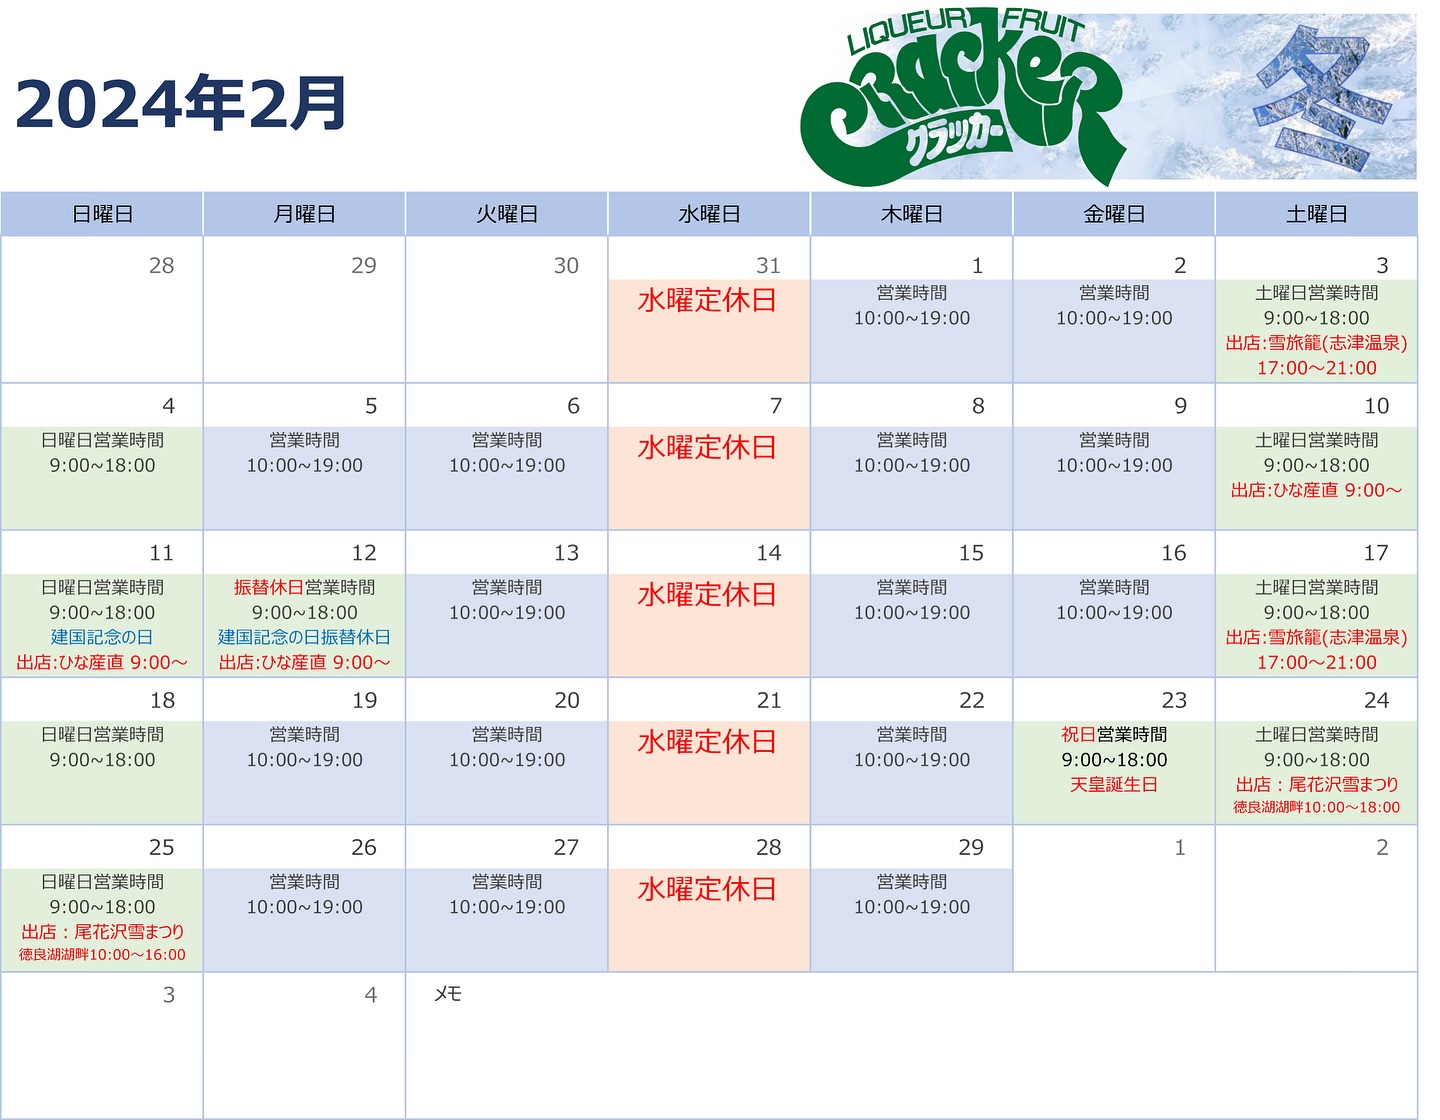 クラッカーの2月
営業カレンダー